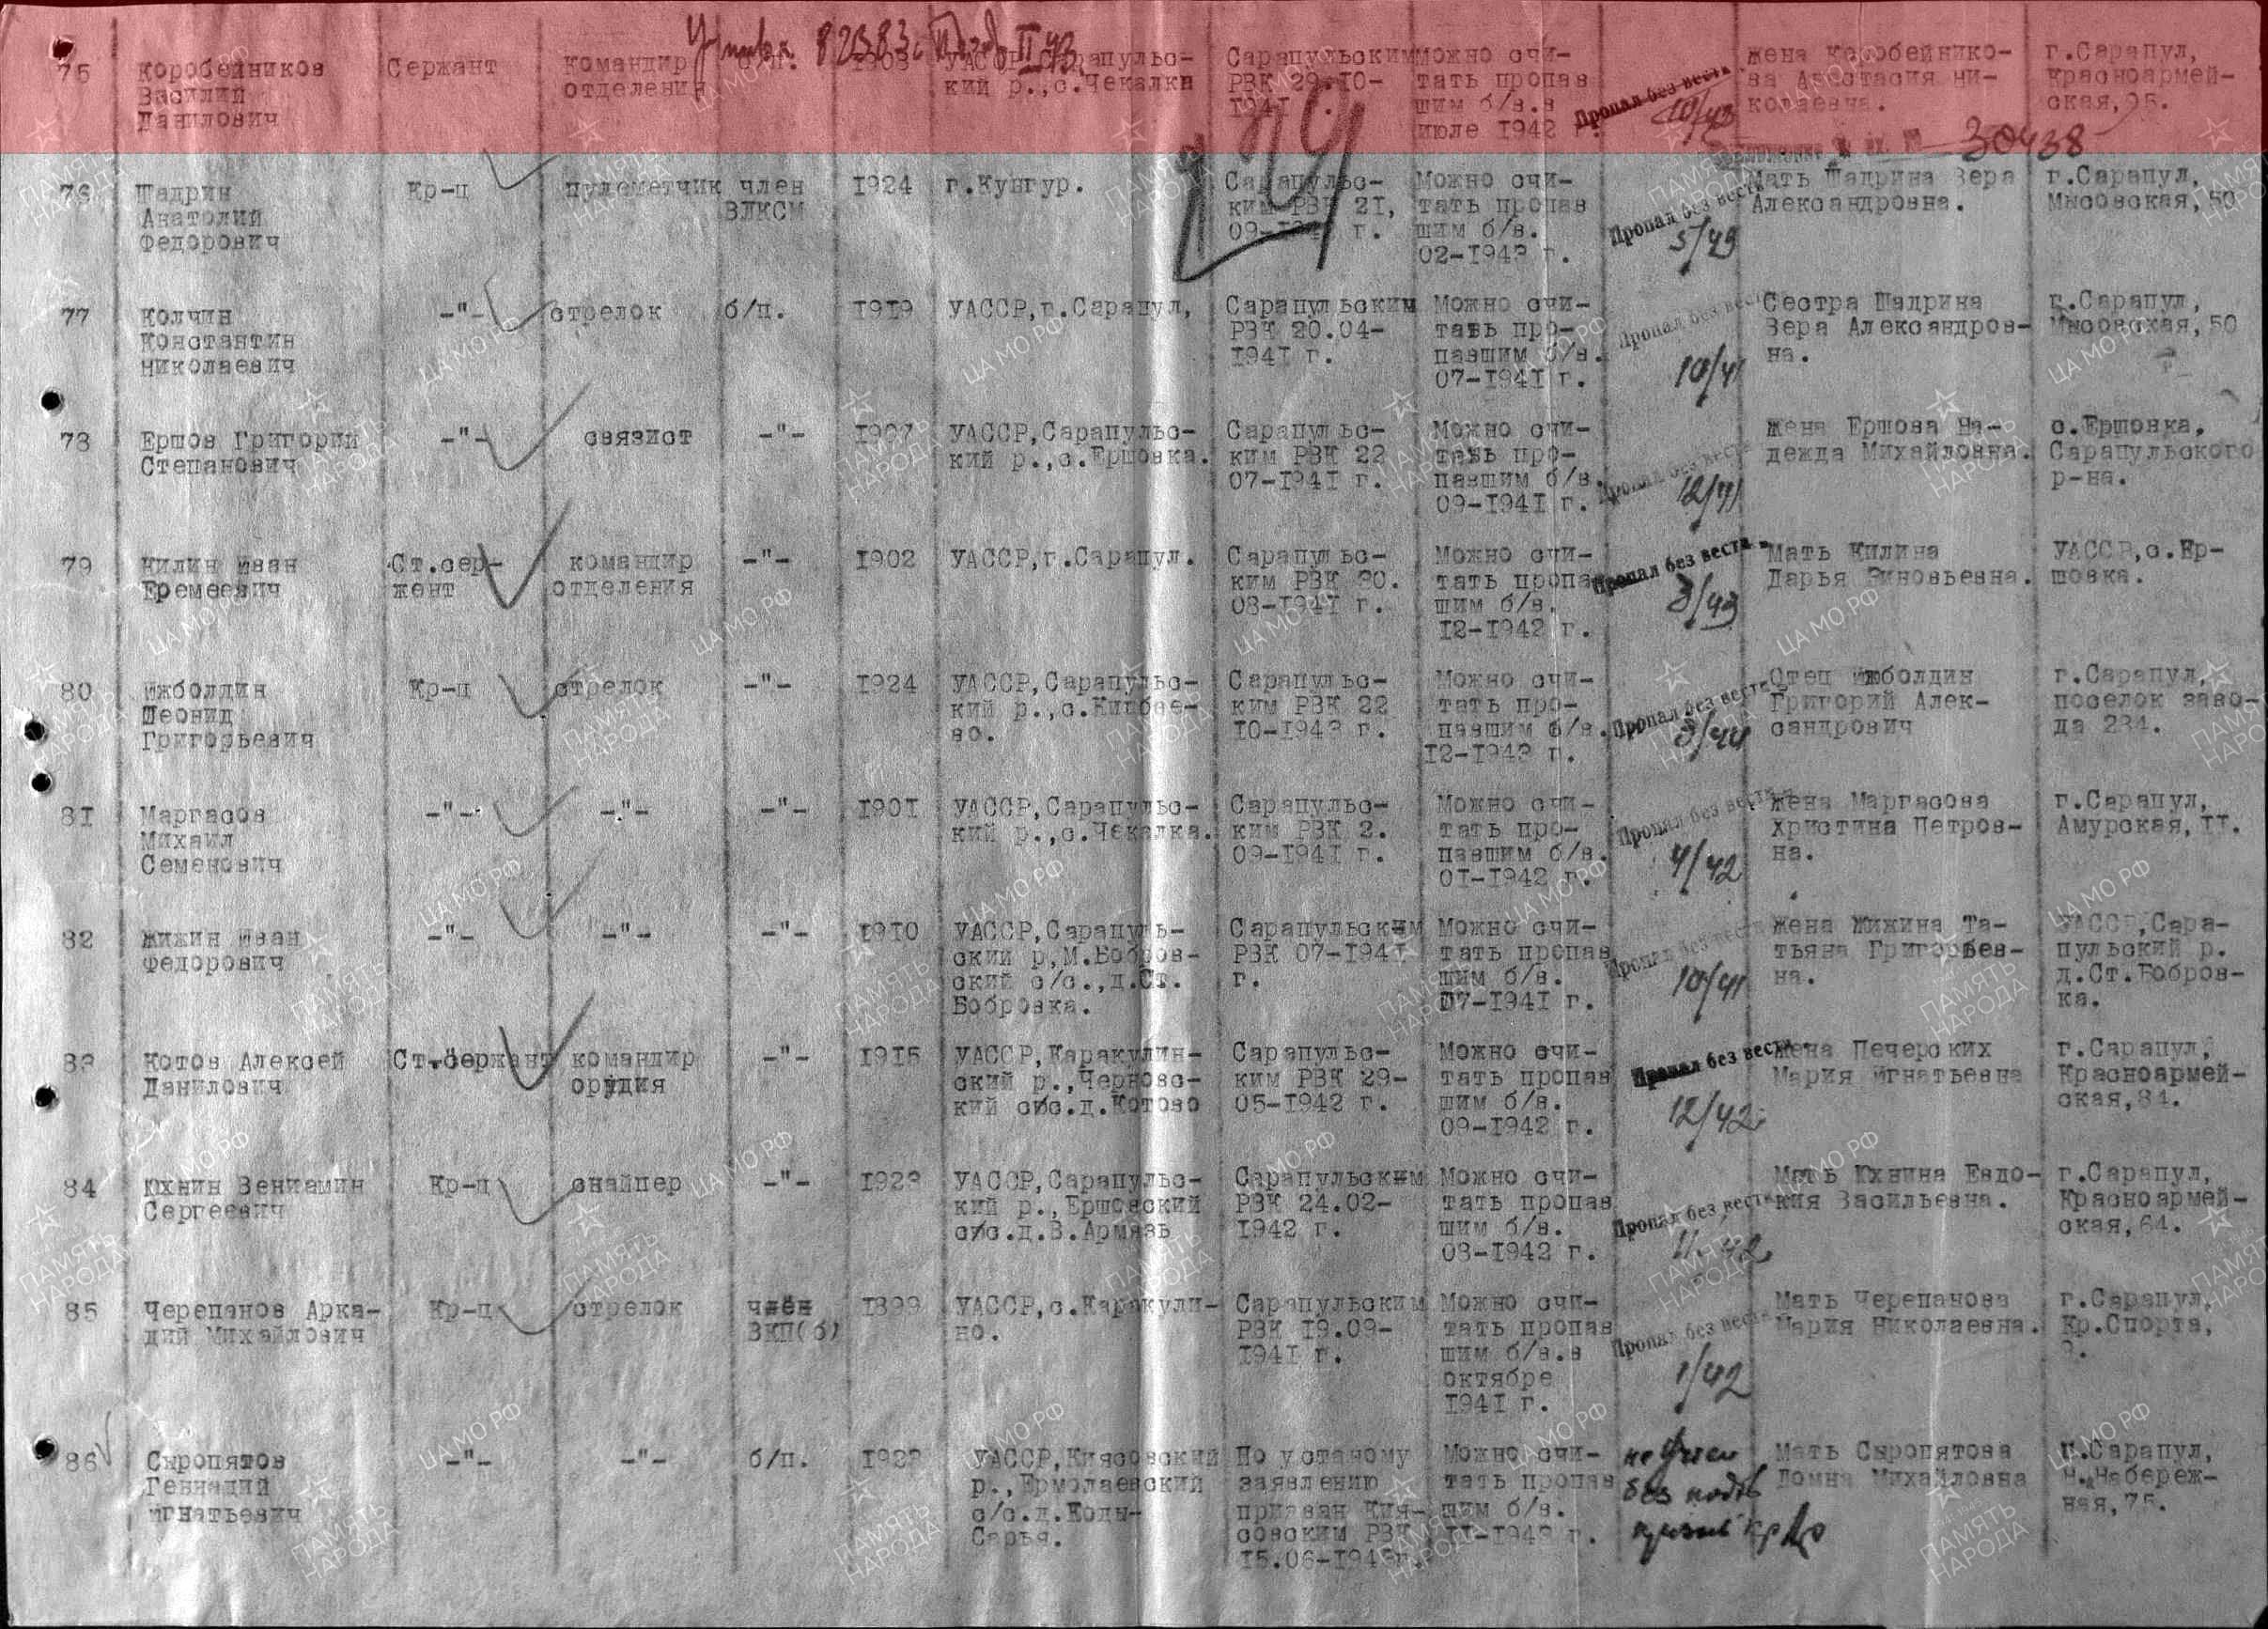 Лист донесения послевоенного периода, уточняющего потери, 04.05.1947